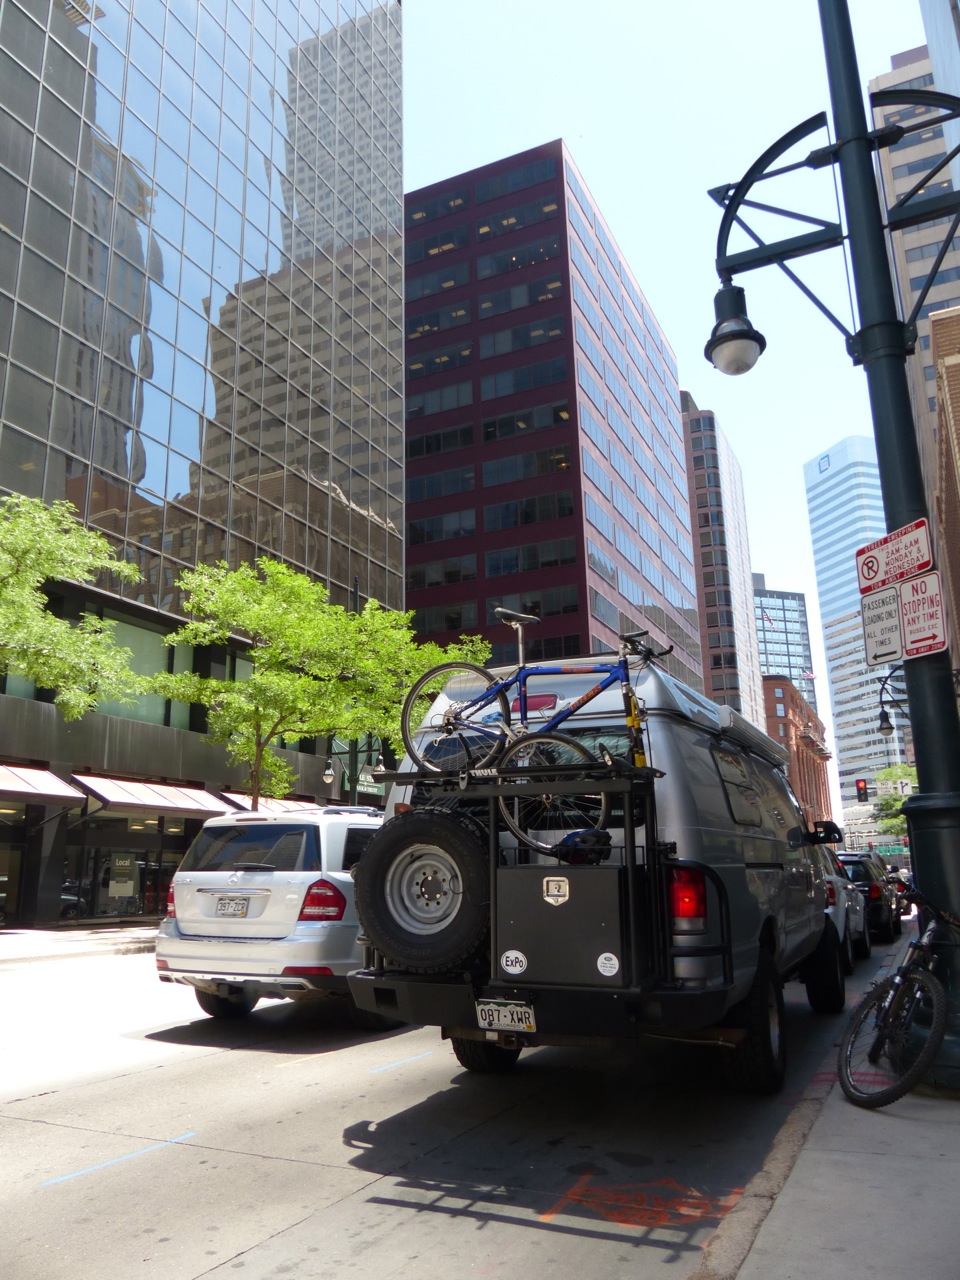 Sparks' van parked in downtown denver